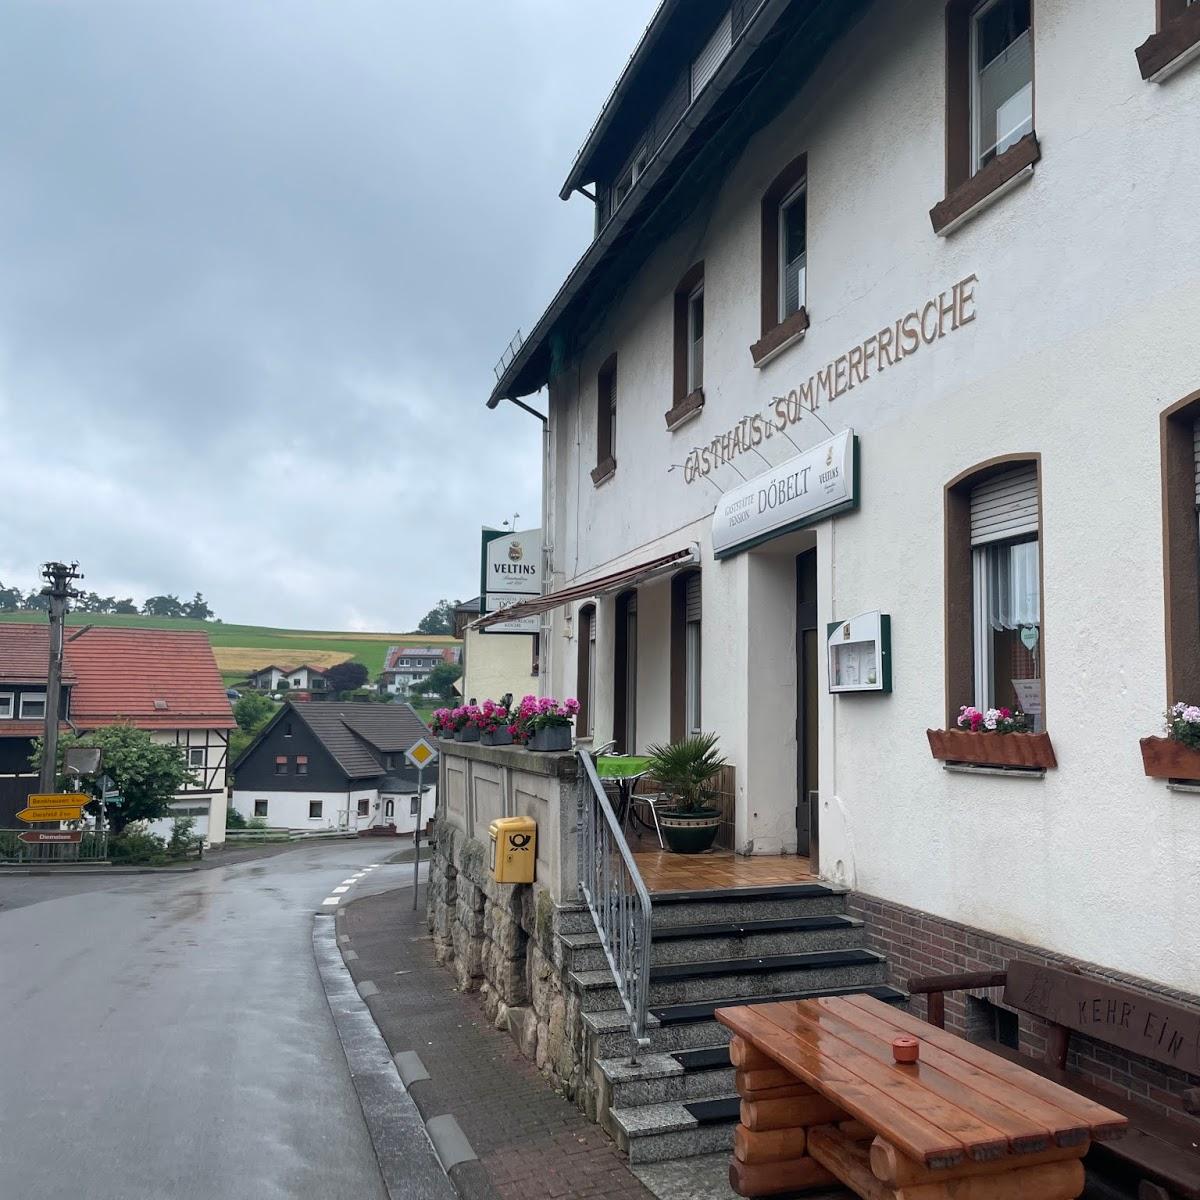 Restaurant "Gasthaus und Pension Döbelt" in Diemelsee